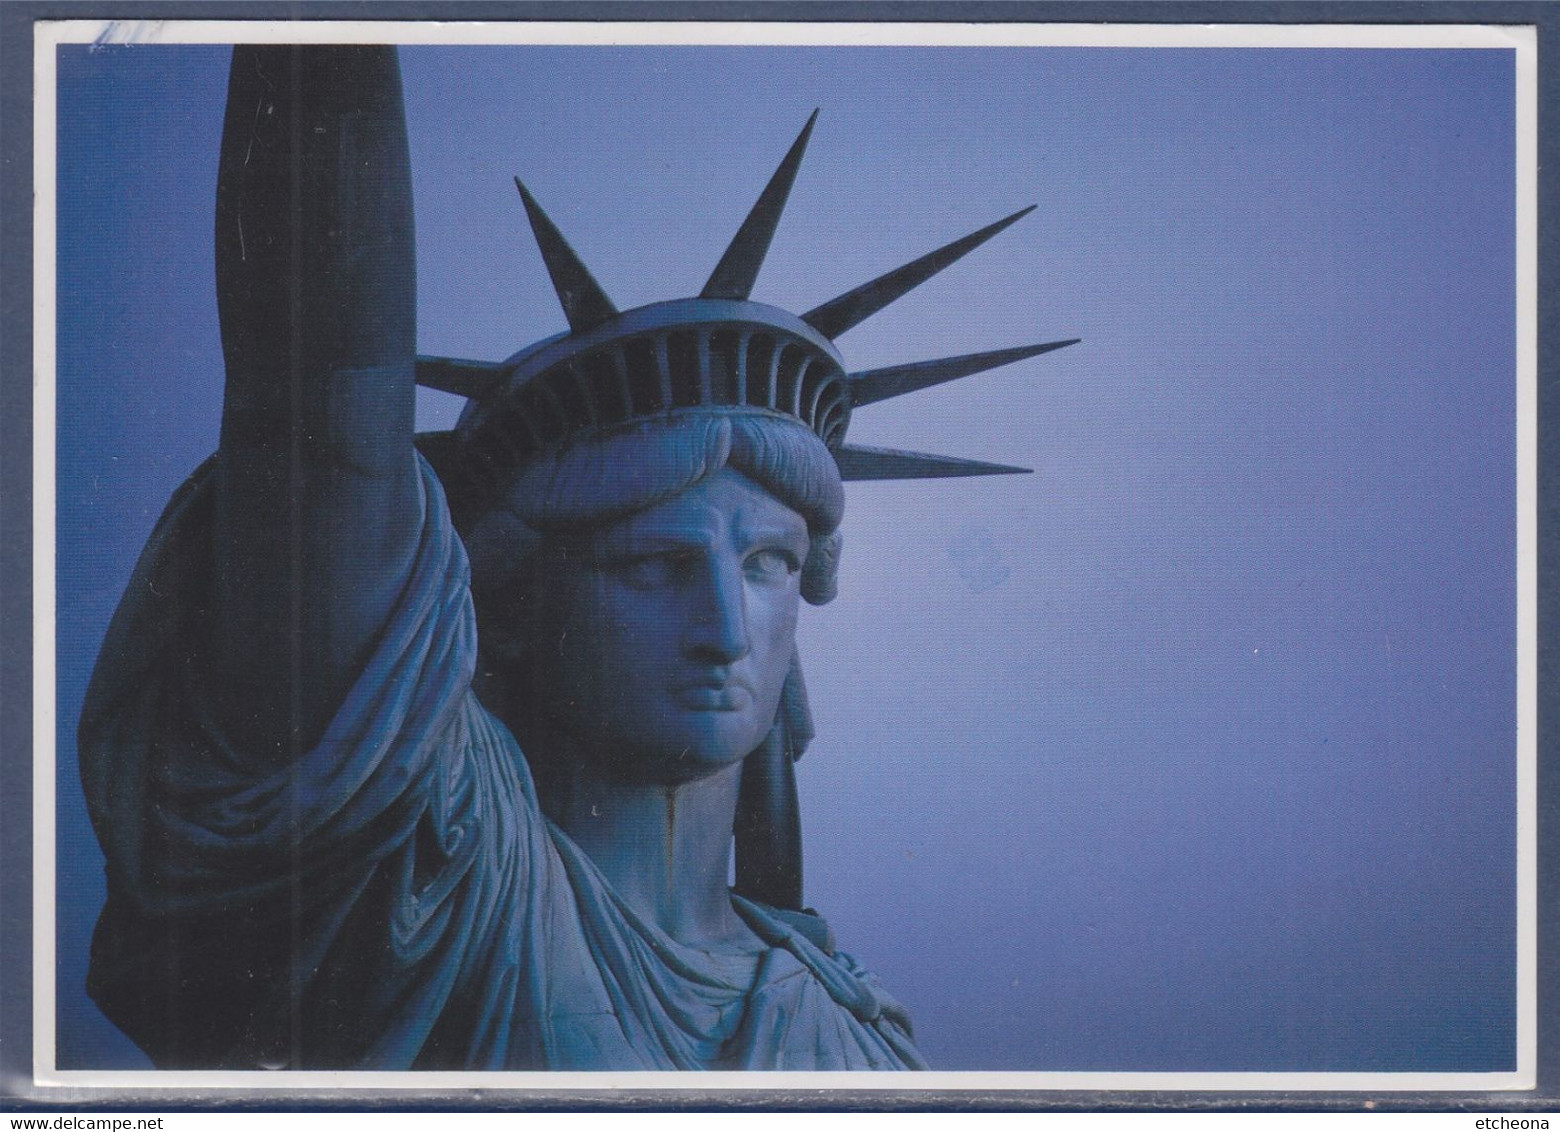 La Tête De La Statue De La Liberté, New-York 14.11.1994 Timbre William T. Piper Pionnier De L'aviation - Freiheitsstatue